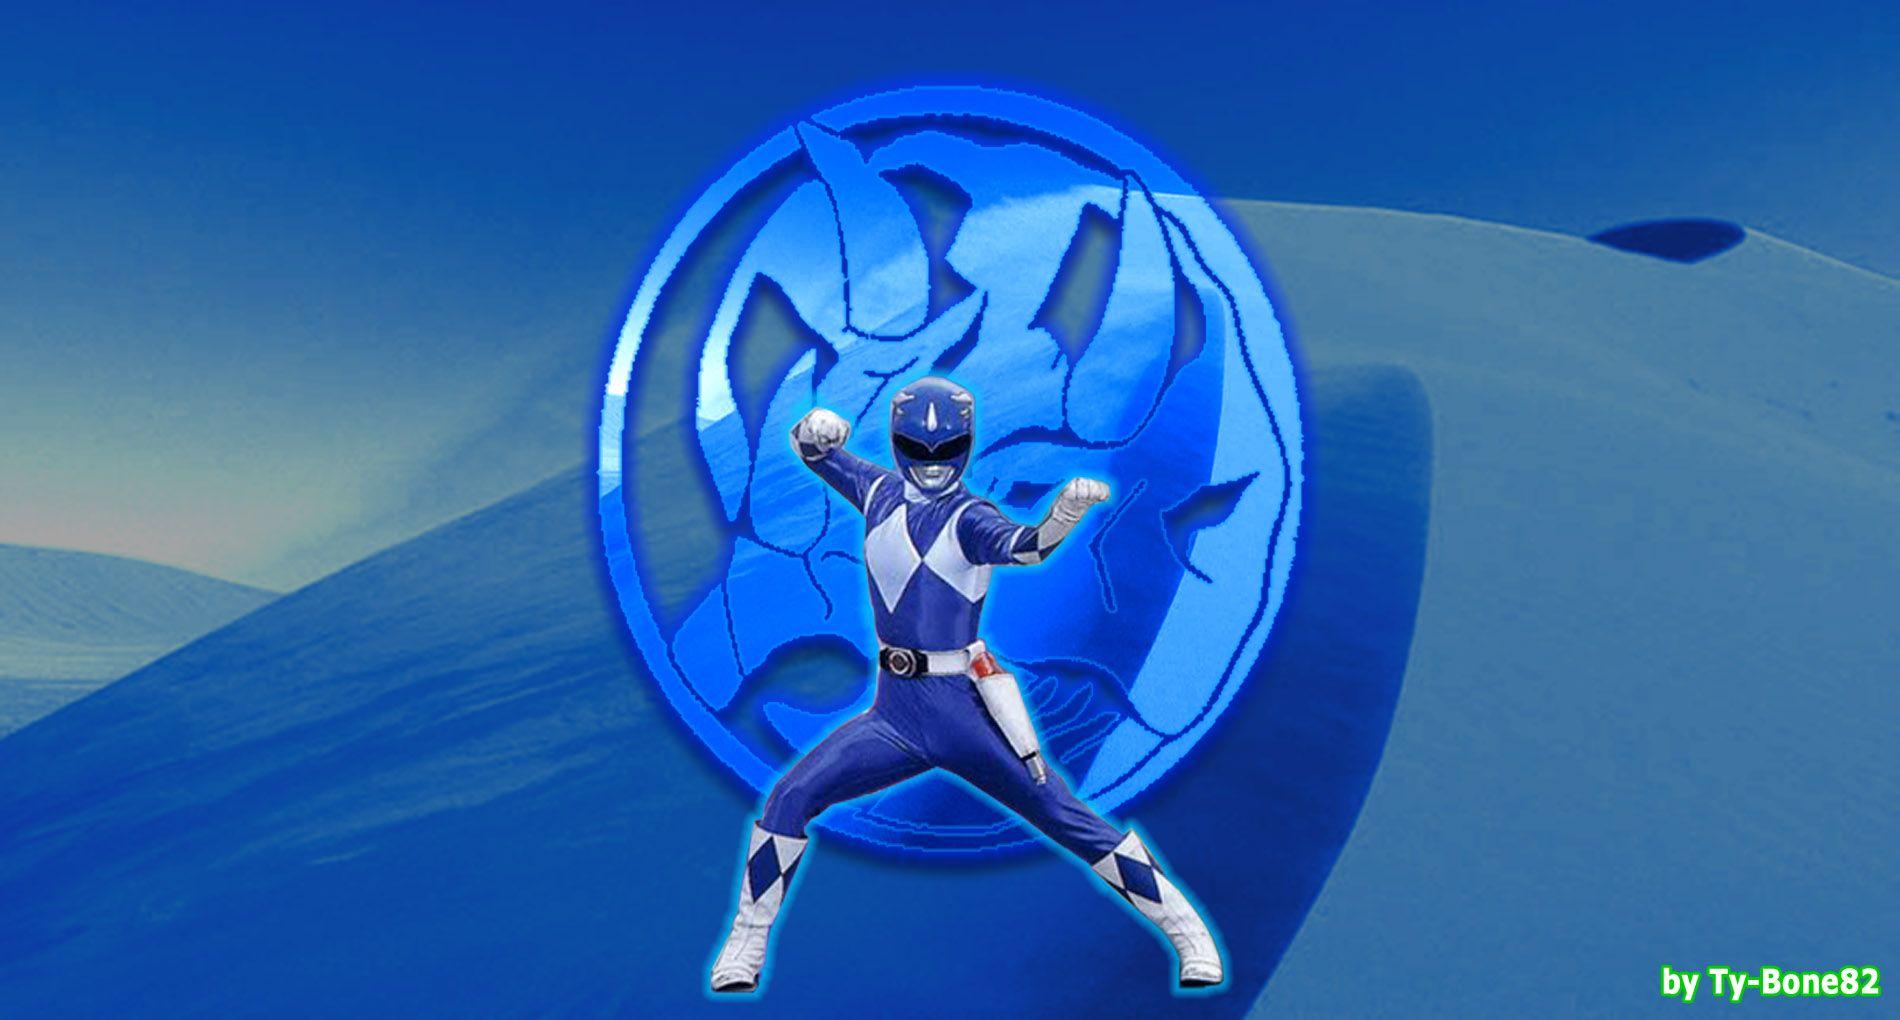 Power Rangers 2017 Blue Ranger Wallpaper